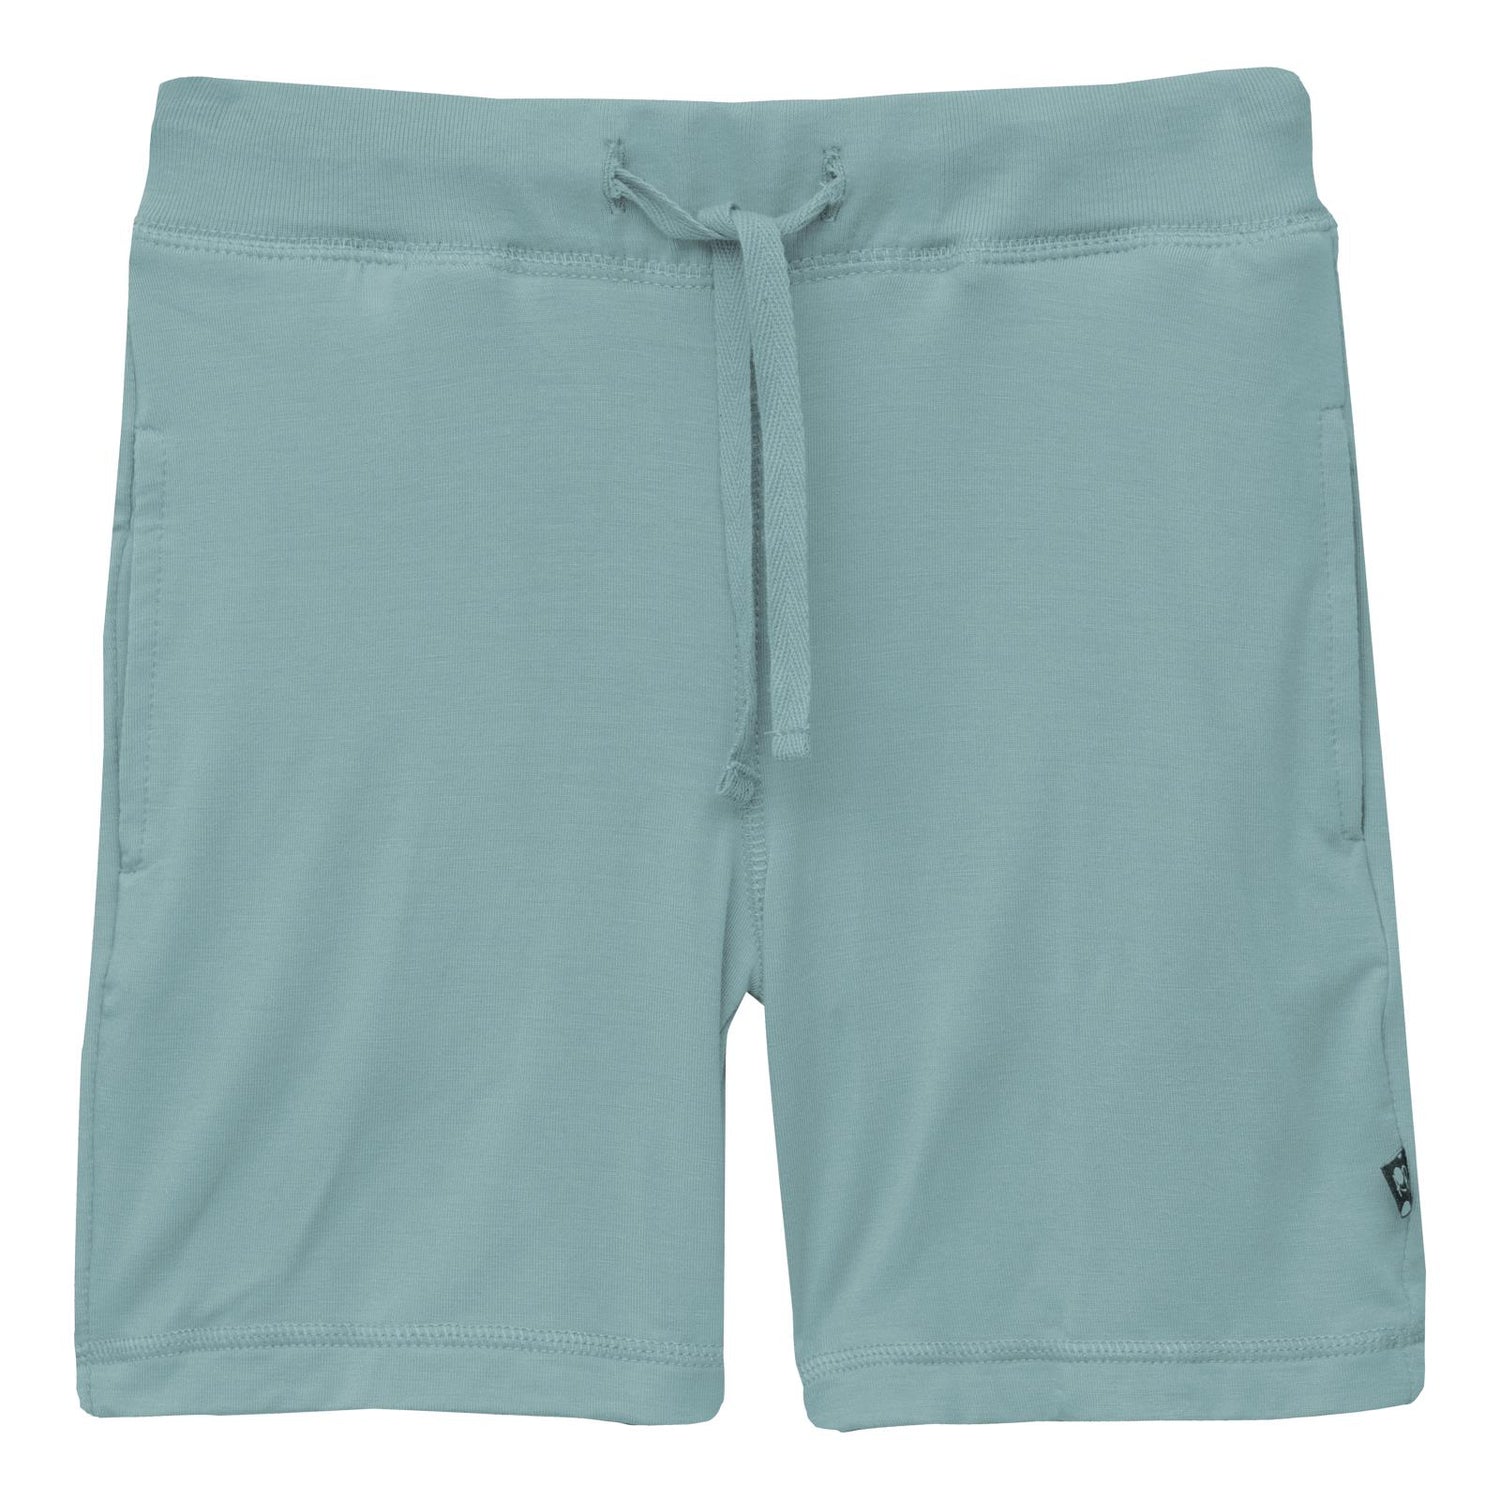 Lightweight Drawstring Shorts in Jade